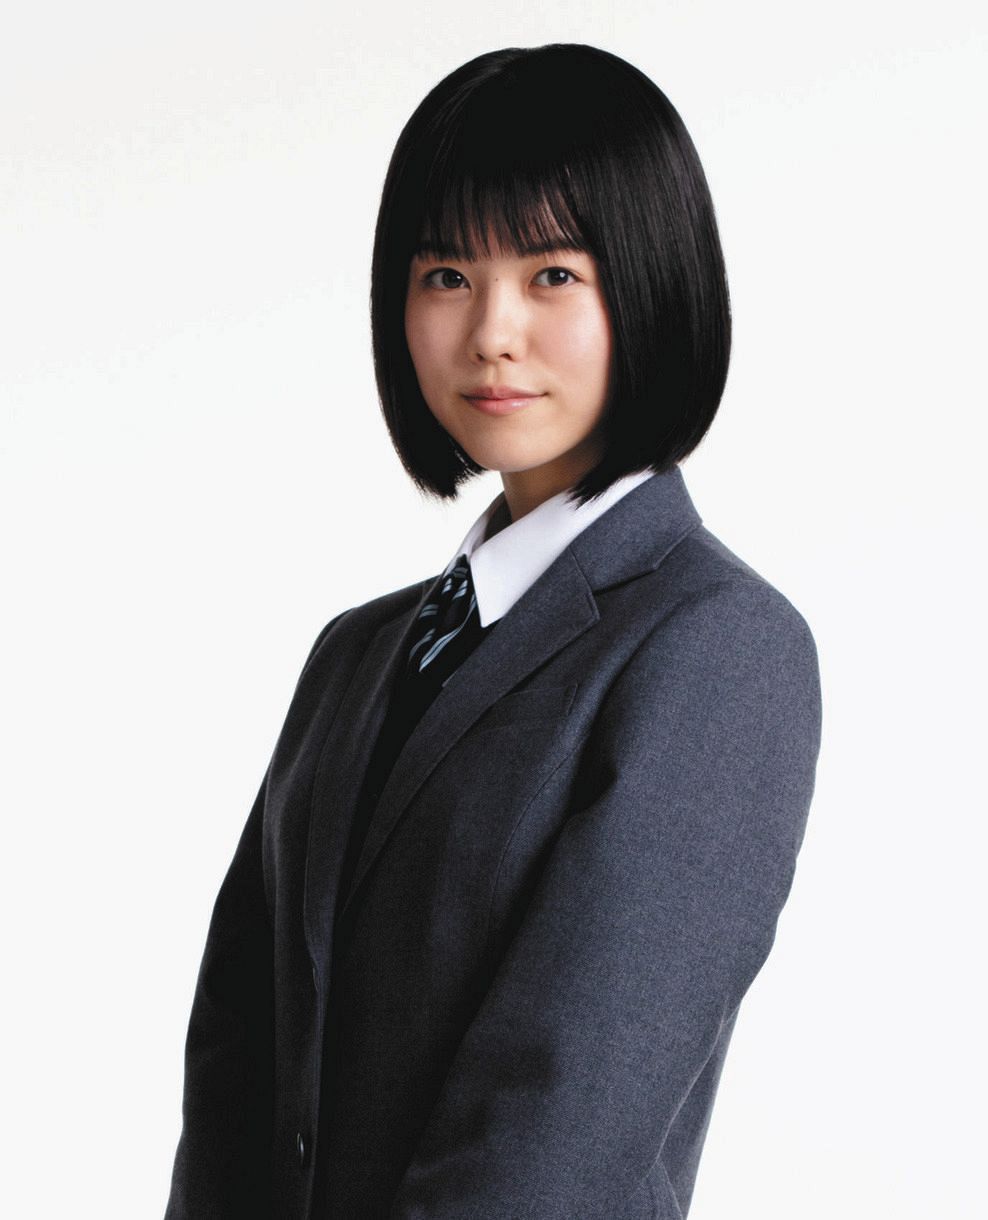 志田彩良 ドラゴン桜 生徒役に決定 モデル 女優で注目の21歳 信じられませんでした 中日スポーツ 東京中日スポーツ